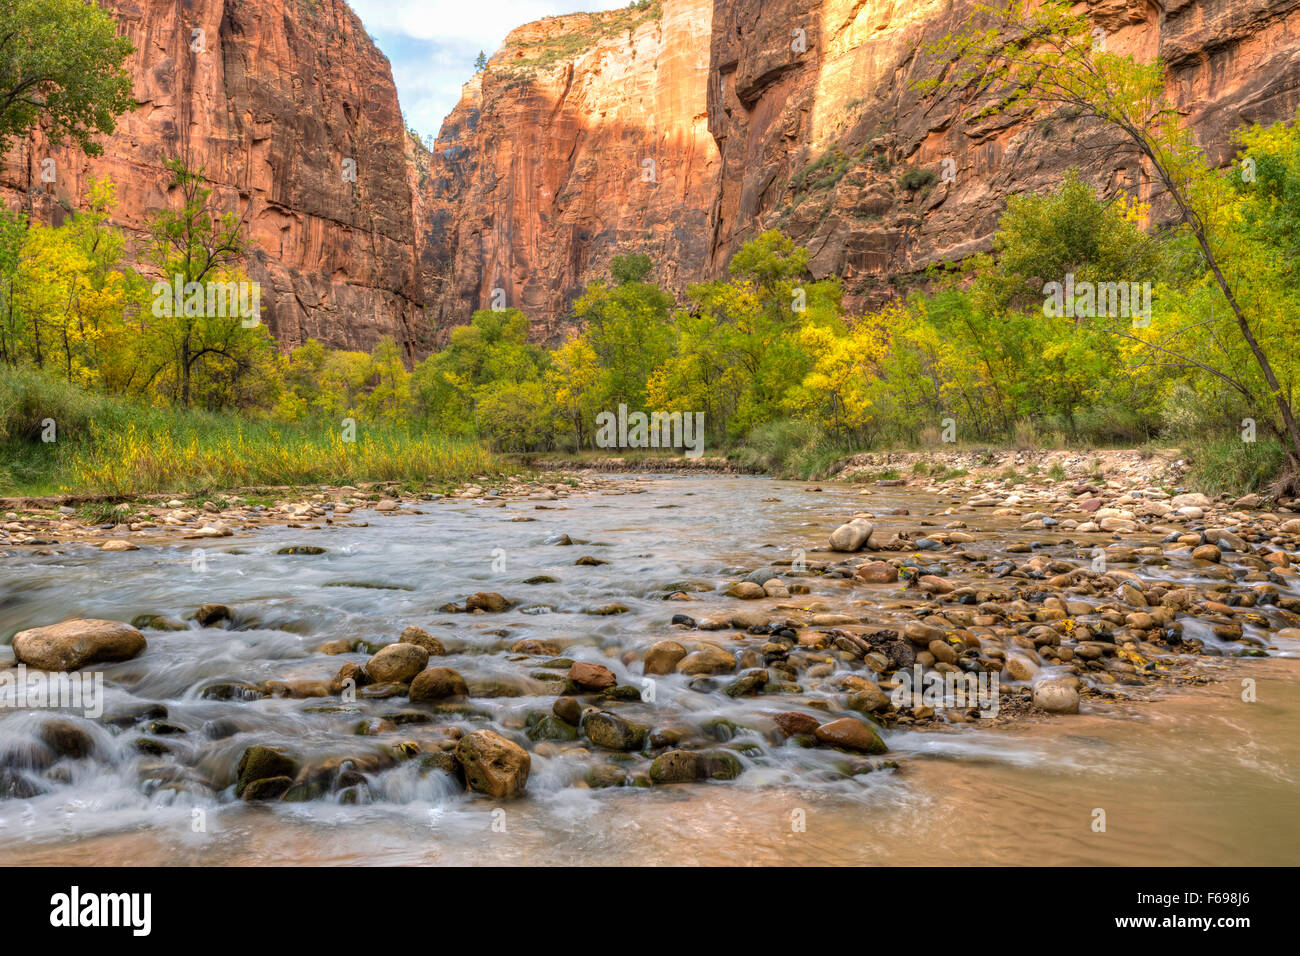 Pierres de rivière dans la rivière vierge avec la couleur en automne dans la région de Zion Canyon Zion National Park, Utah. Banque D'Images